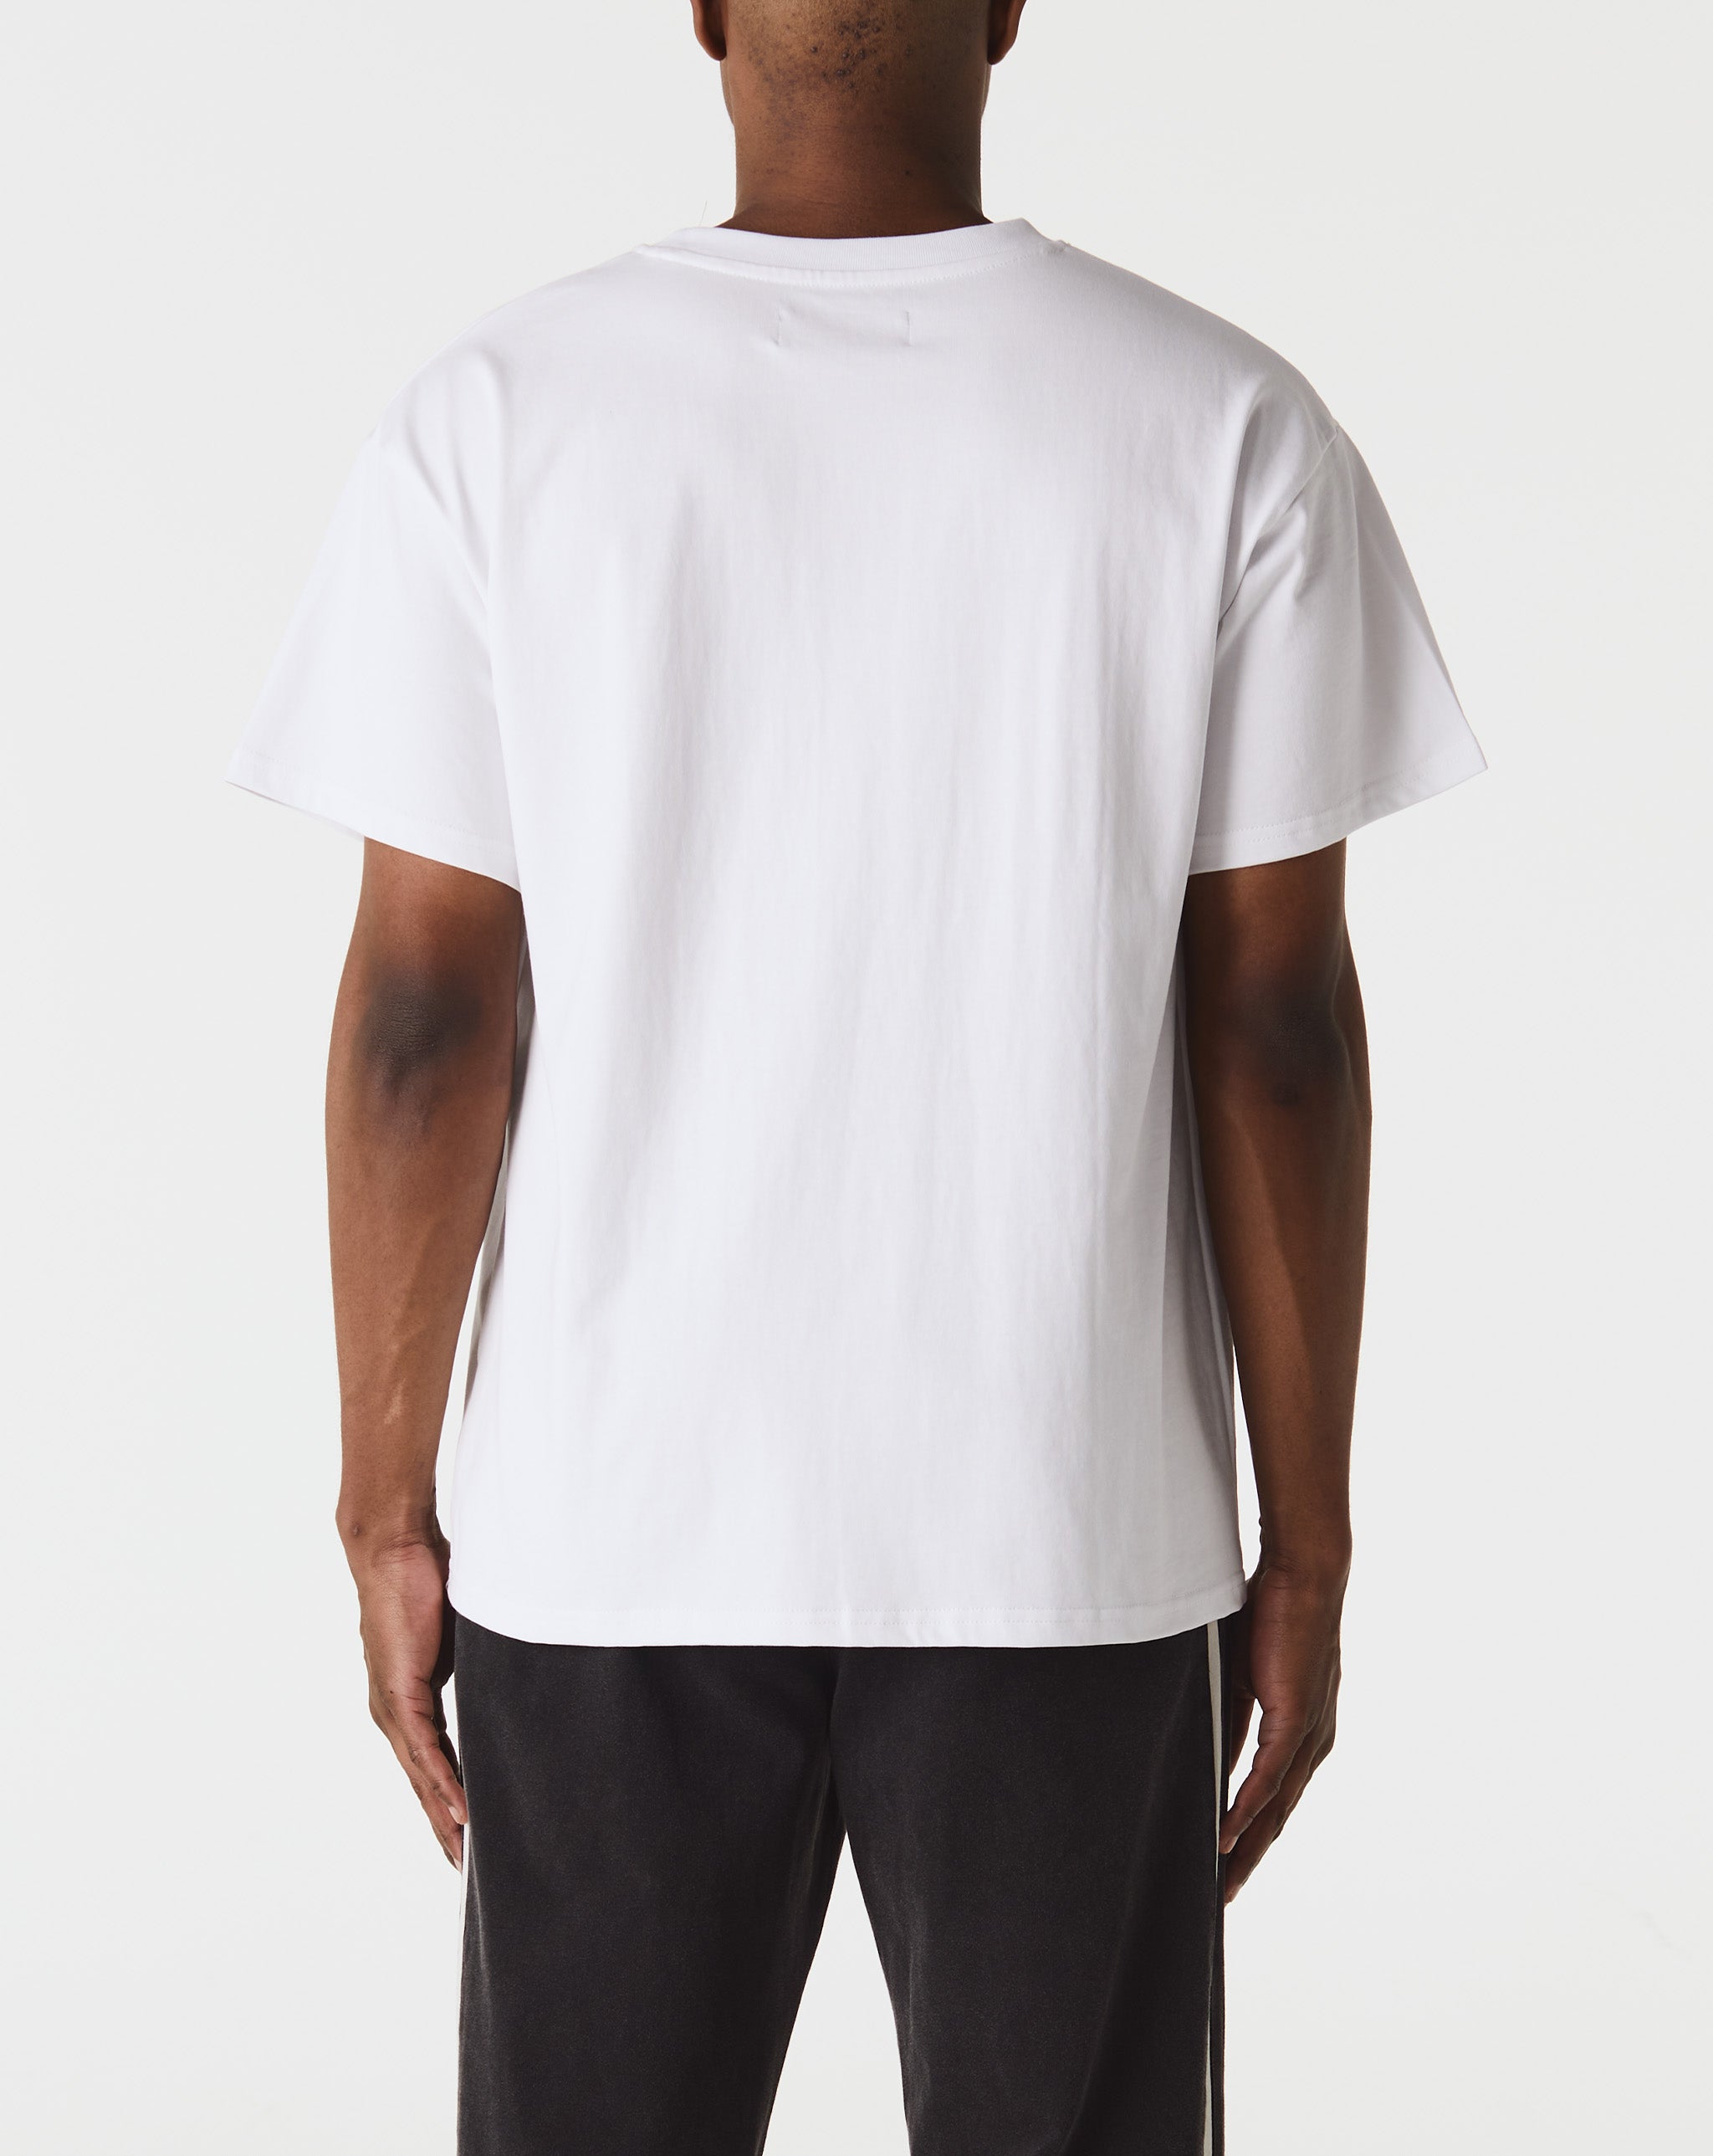 Big G-Logo Hooded Sweatshirt Training T-Shirt  - Cheap Urlfreeze Jordan outlet